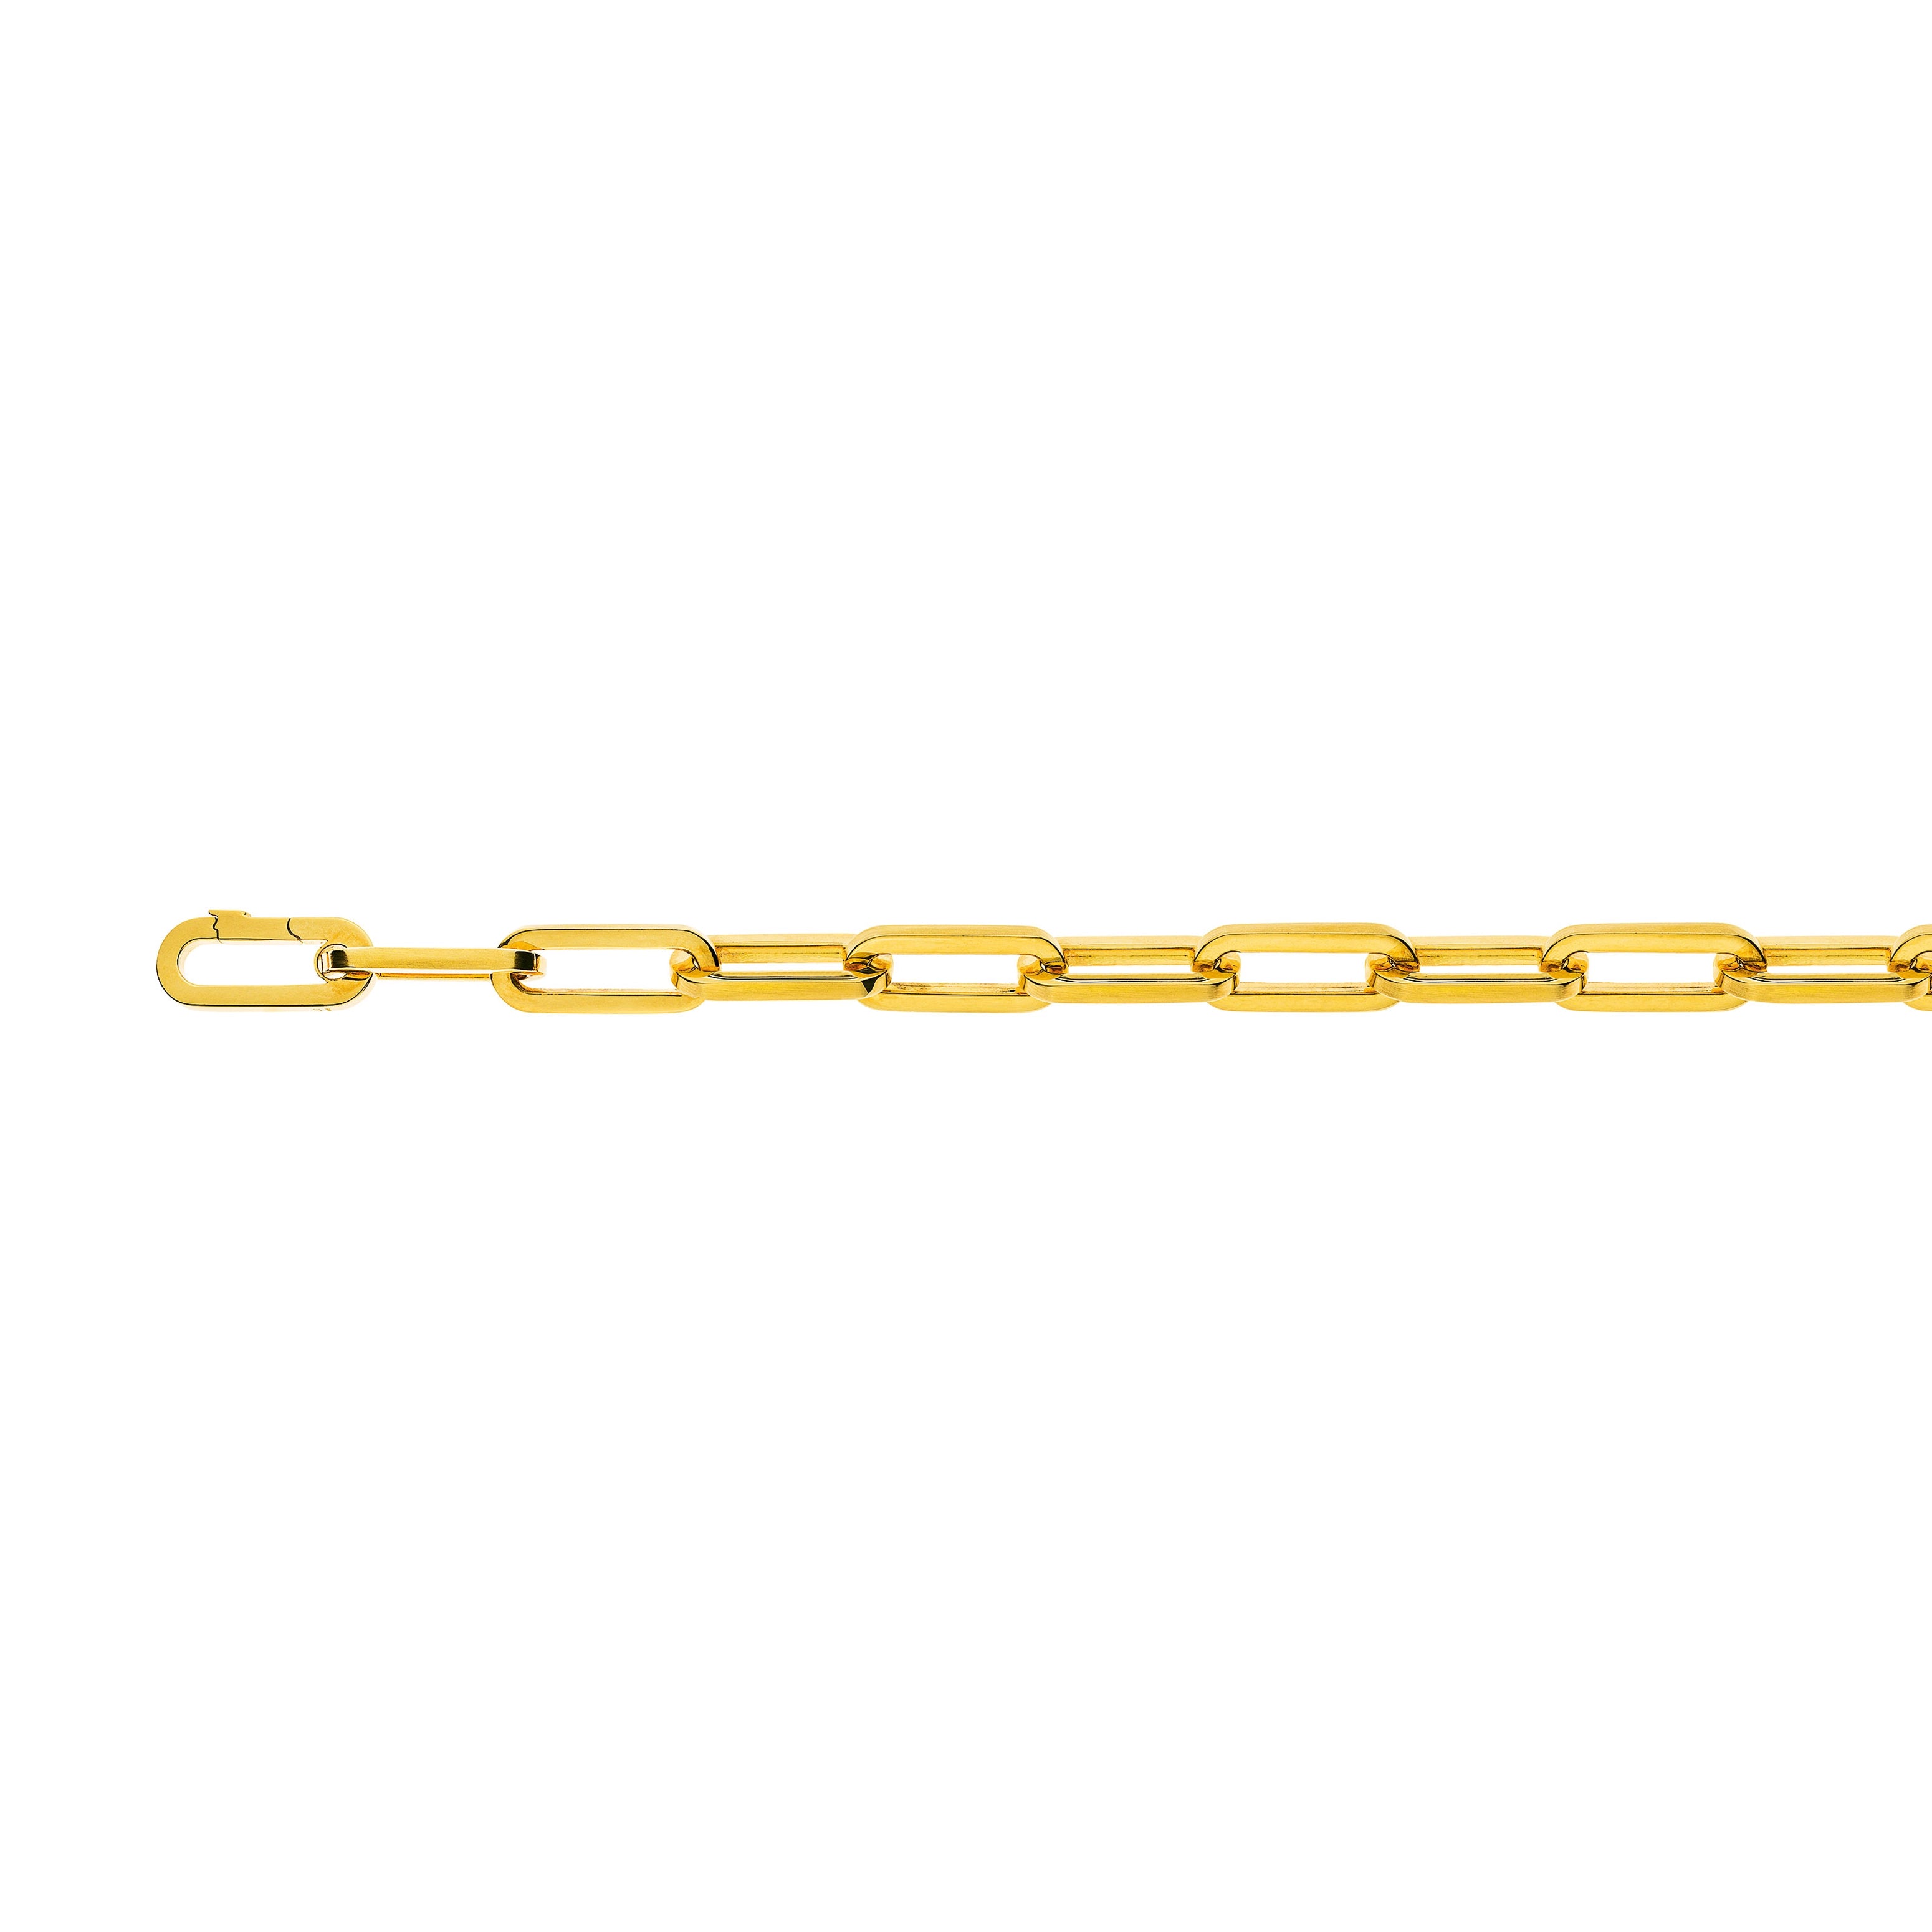 Armbänd Gelbgold 750 Anker Oval Handarbeit Carrédraht, Satiniert/Poliert, ca. 2.0 mm, 21.5 cm